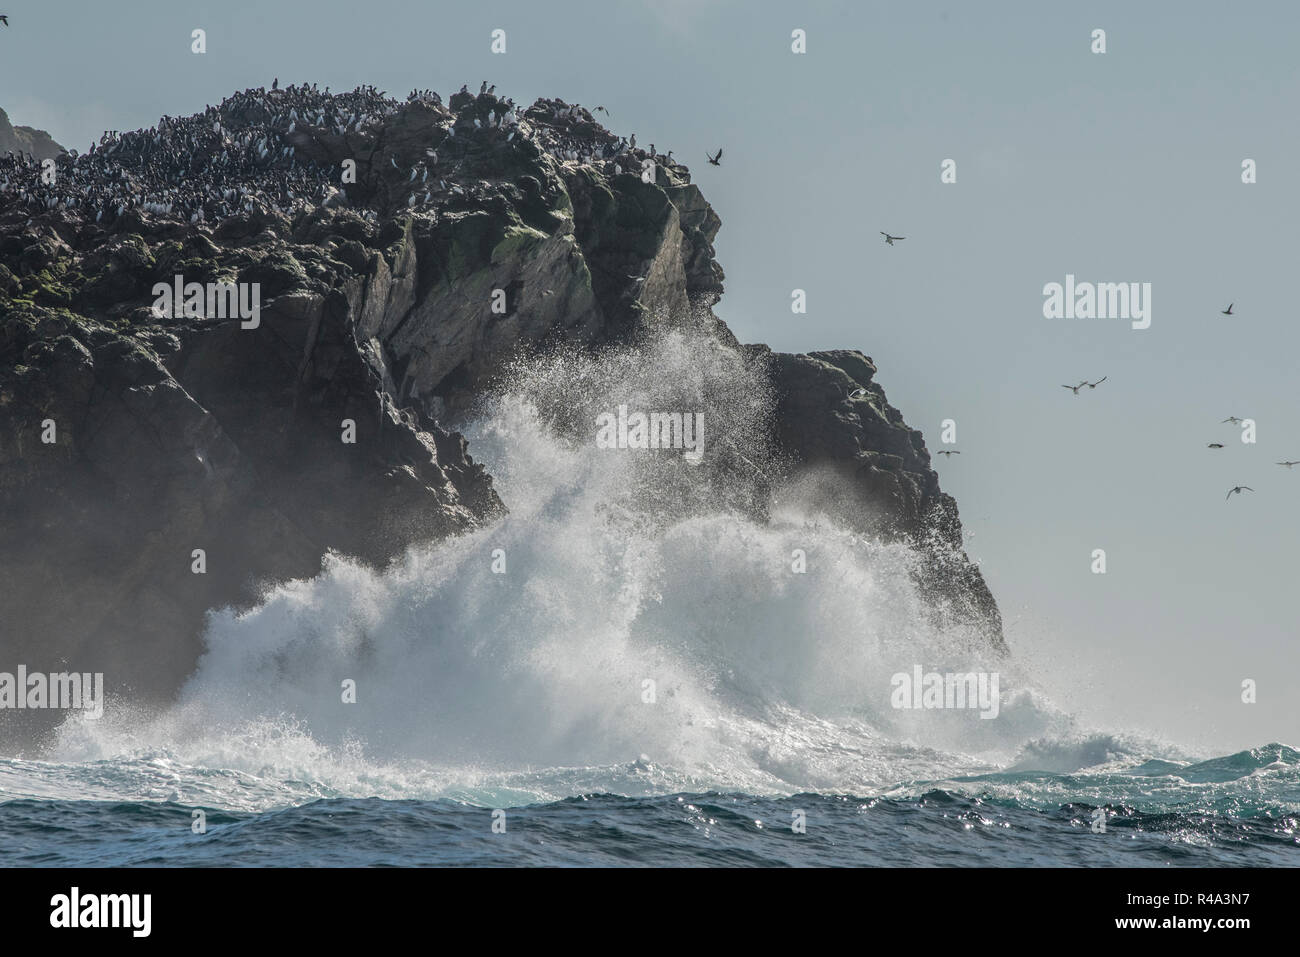 Le onde infrangersi contro la sponda del Farallon isole al largo della costa della California, le isole sono un importante sito di nidificazione per gli uccelli pelagici. Foto Stock